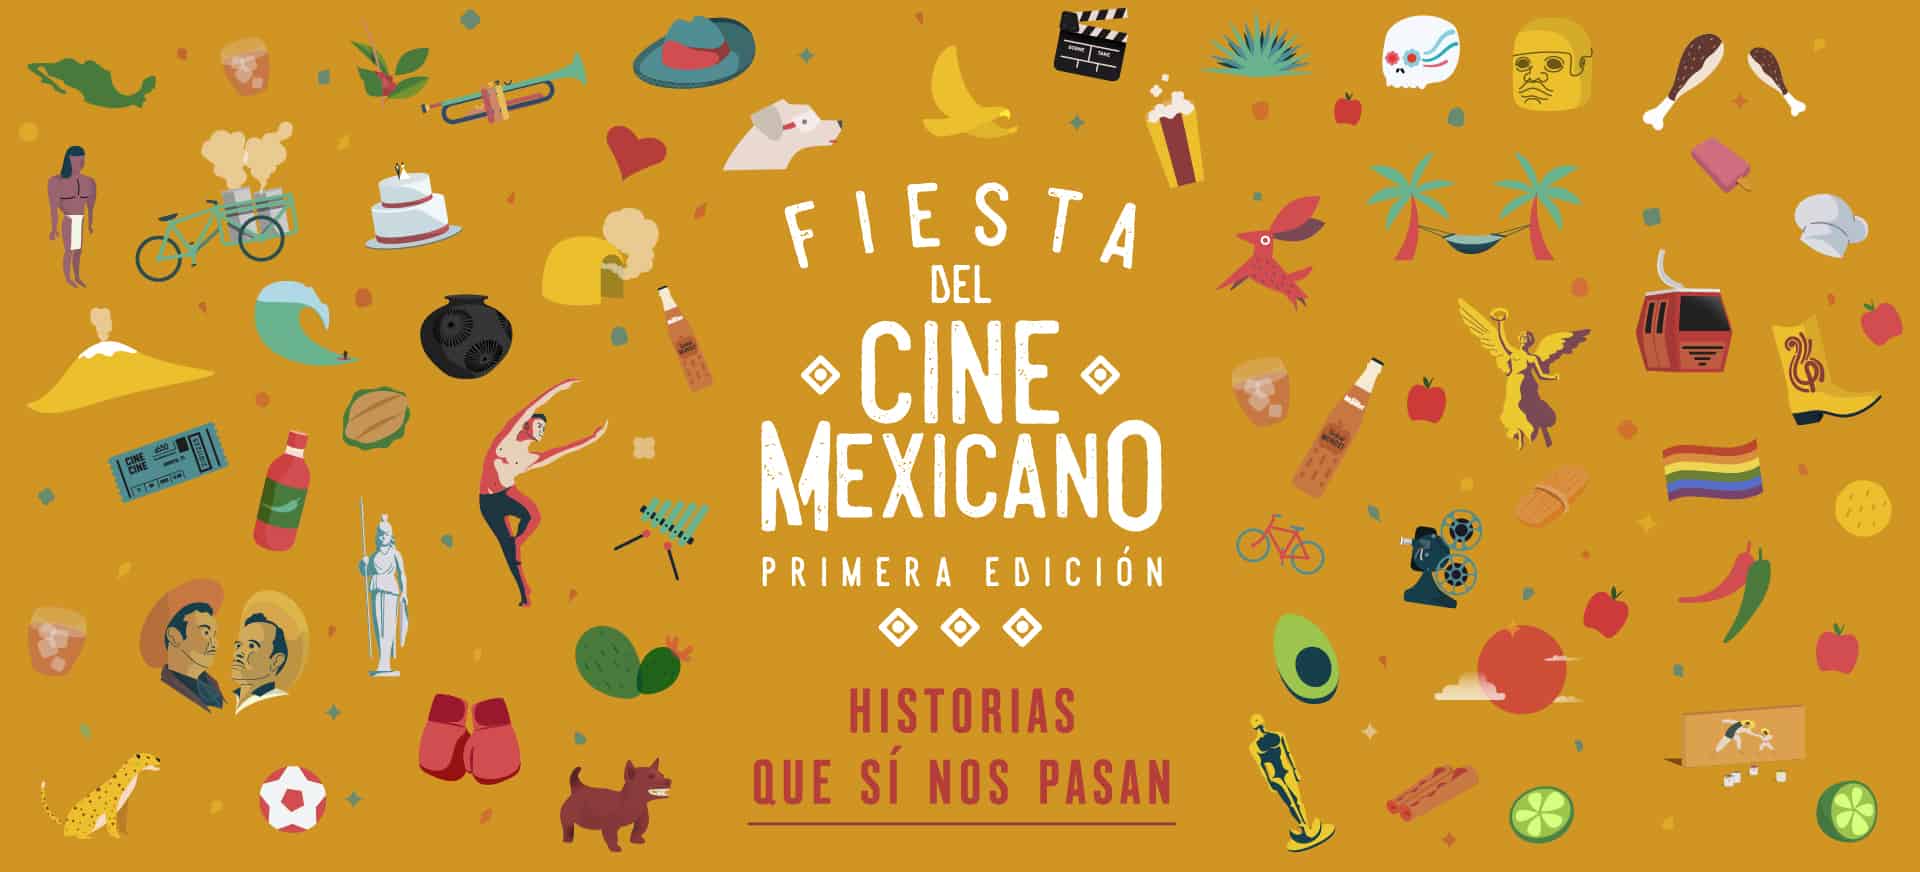 fiesta-cine-mexicano-caterlera-cines-precios-horarios-programa